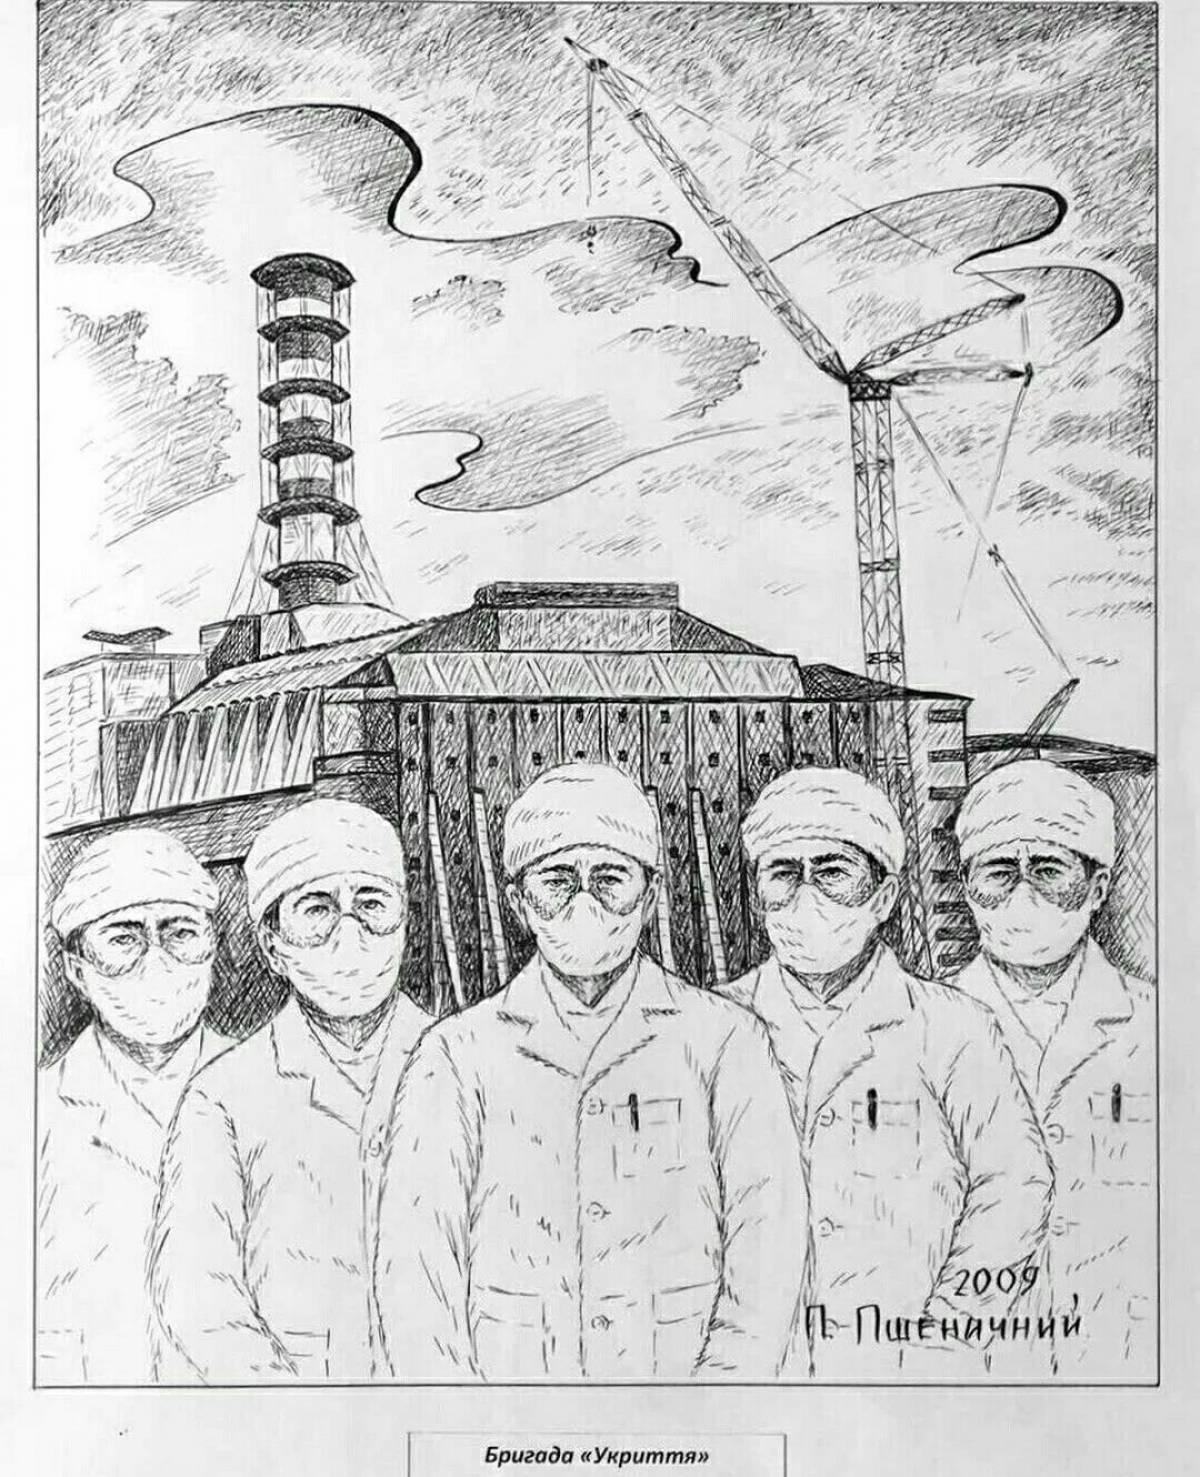 Chernobyl NPP #4